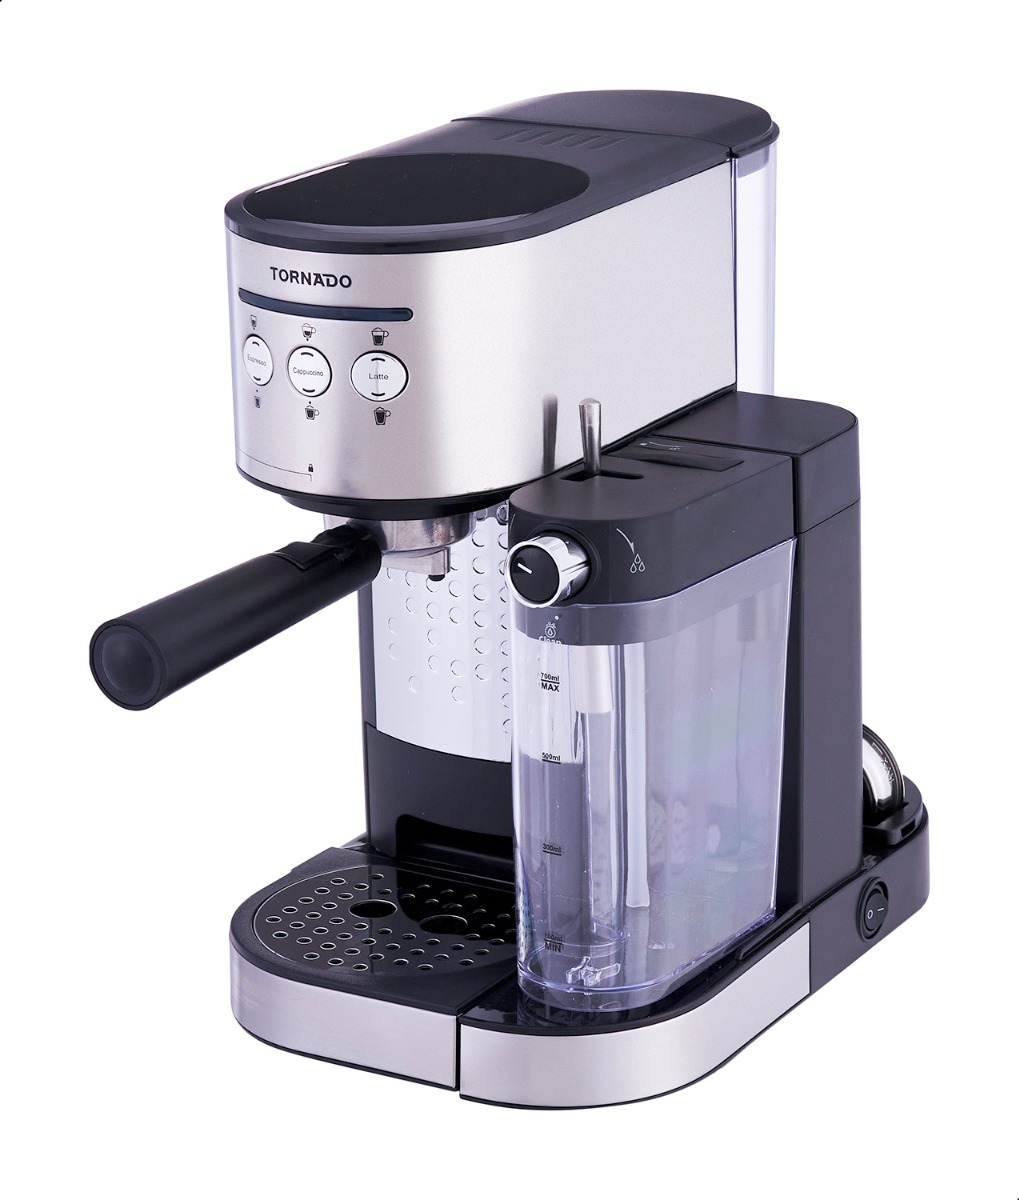 ماكينة قهوة اتوماتيكية تورنيدو، 15 بار، اسود وستانلس ستيل- TCM-14125